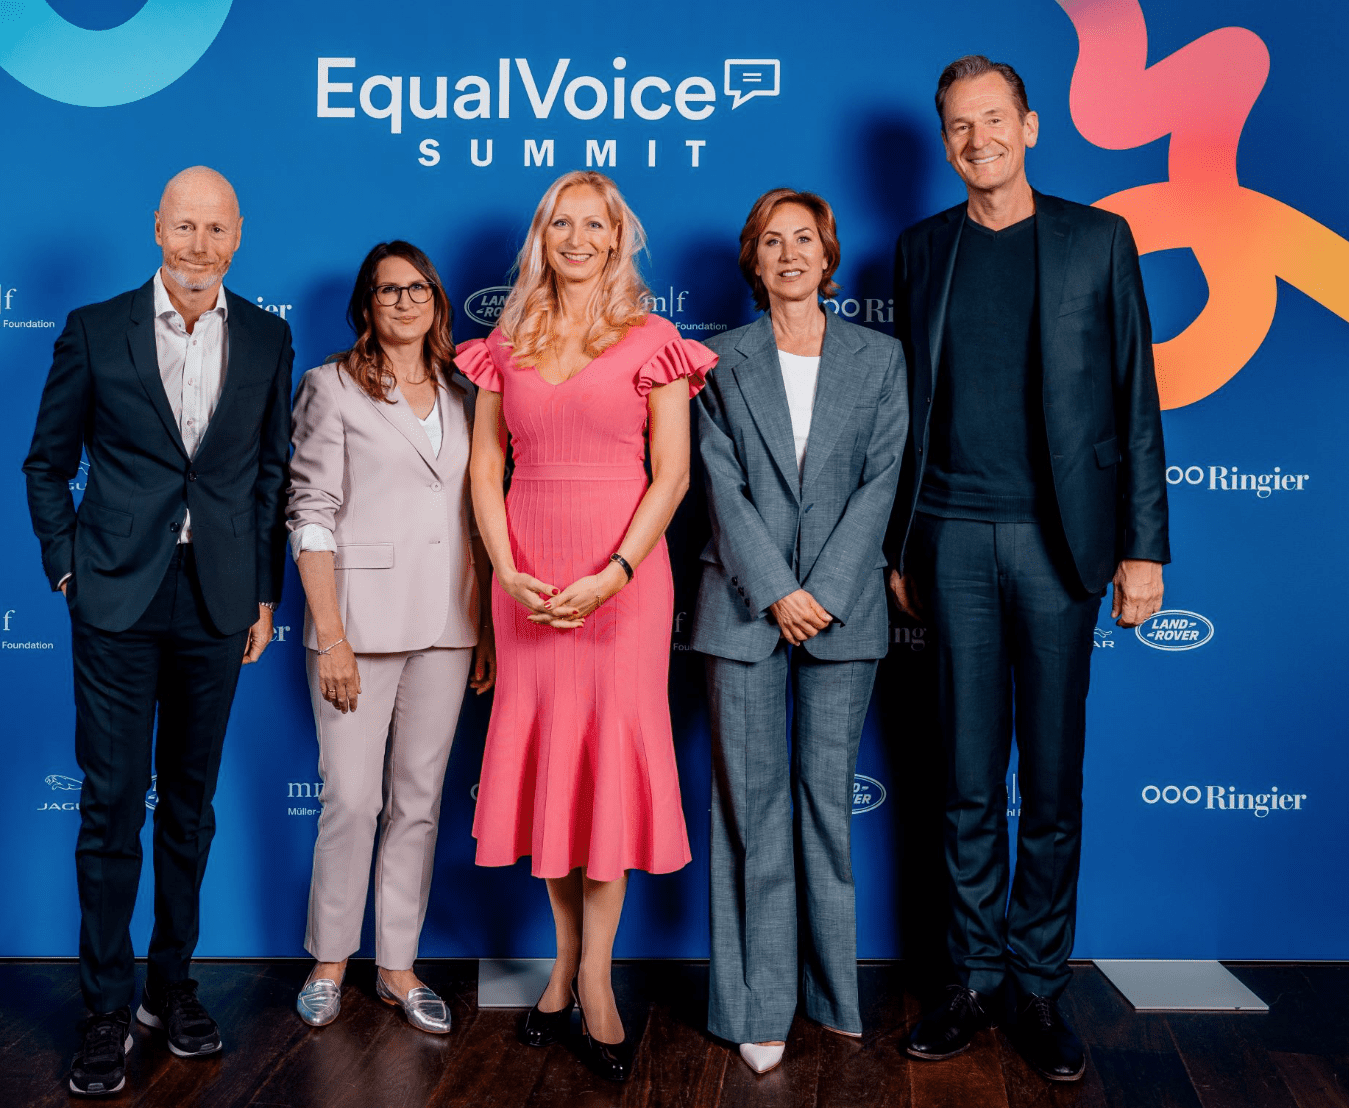 EqualVoice-Initiative lanciert internationalen Diskurs zur Gleichstellung in den Medien